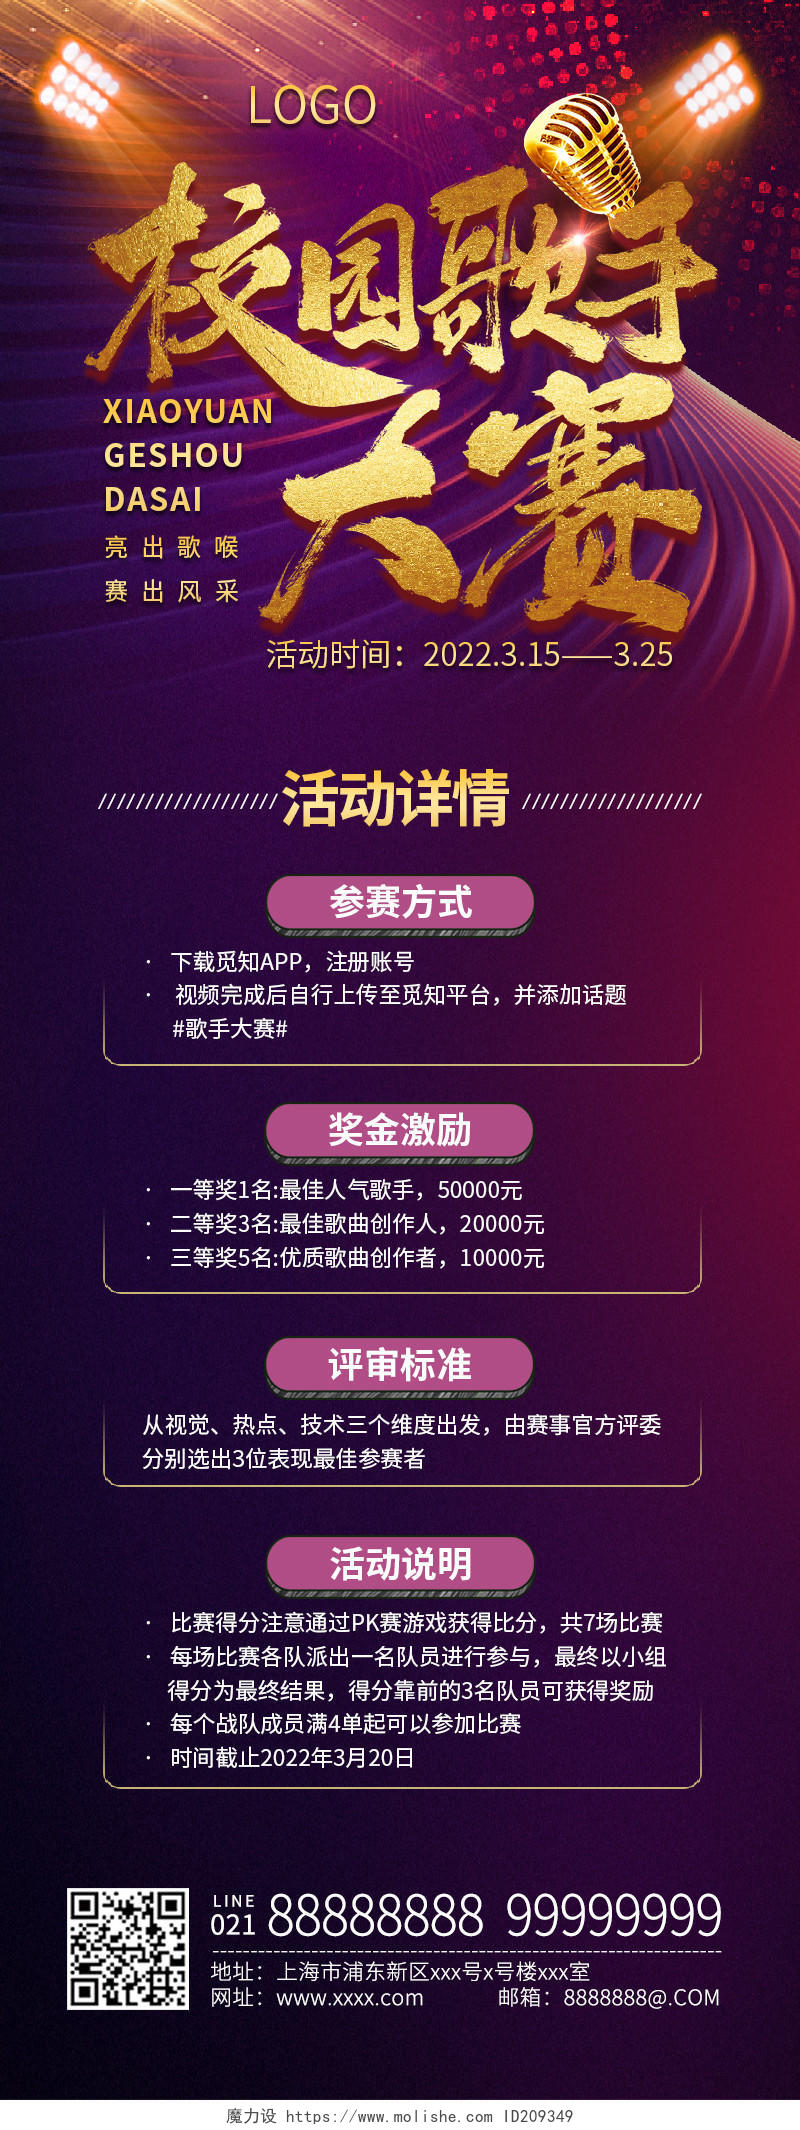 紫色背景炫光风格校园歌手大赛活动手机宣传海报歌唱比赛